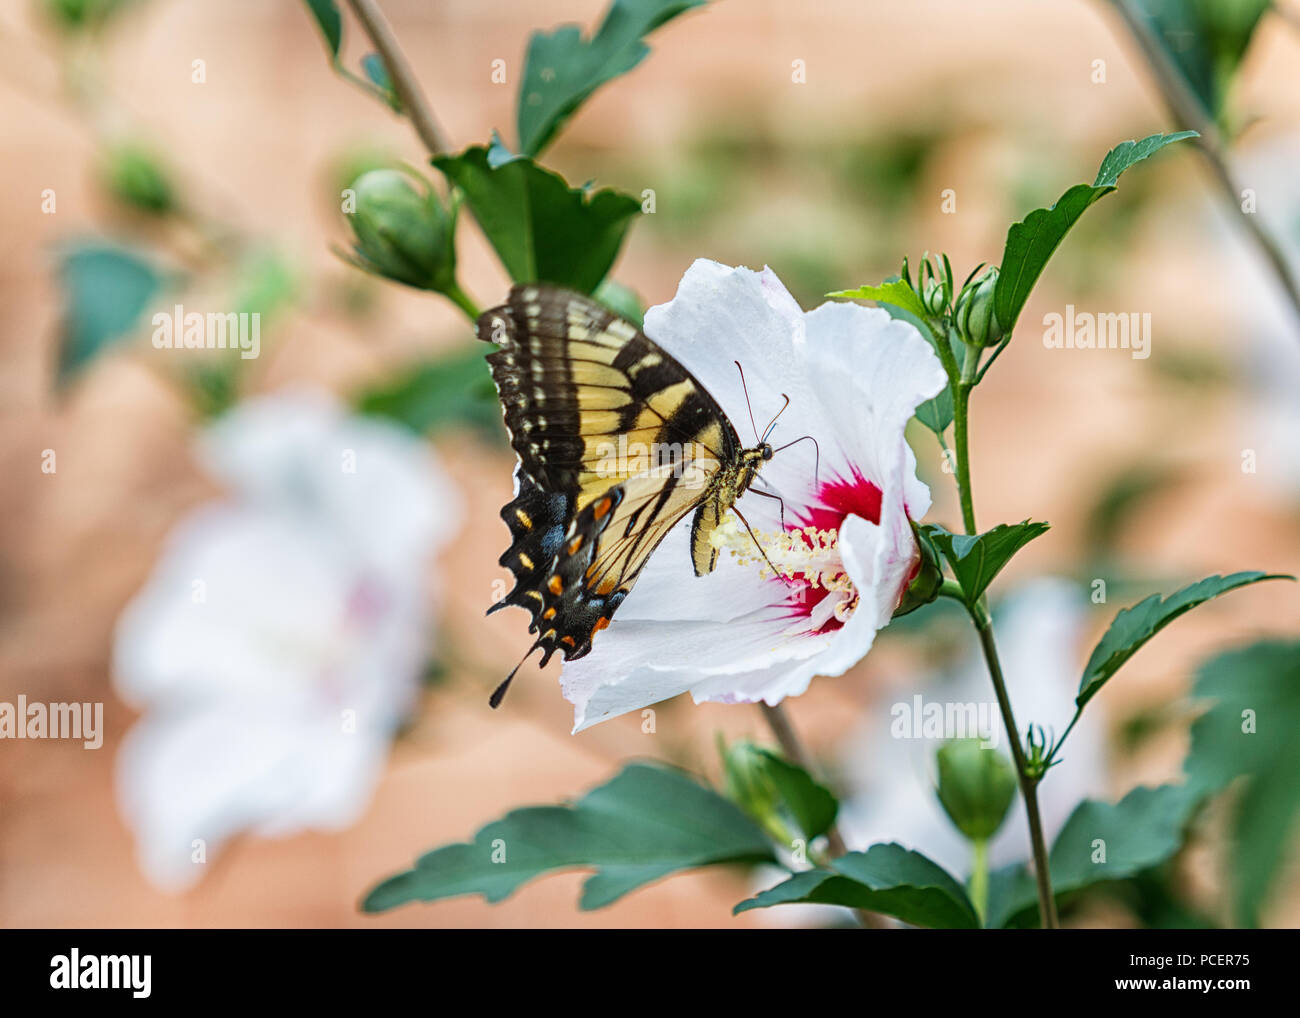 Eastern Tiger Swallowtail Butterfly sur une fleur rose de Sharon. Banque D'Images